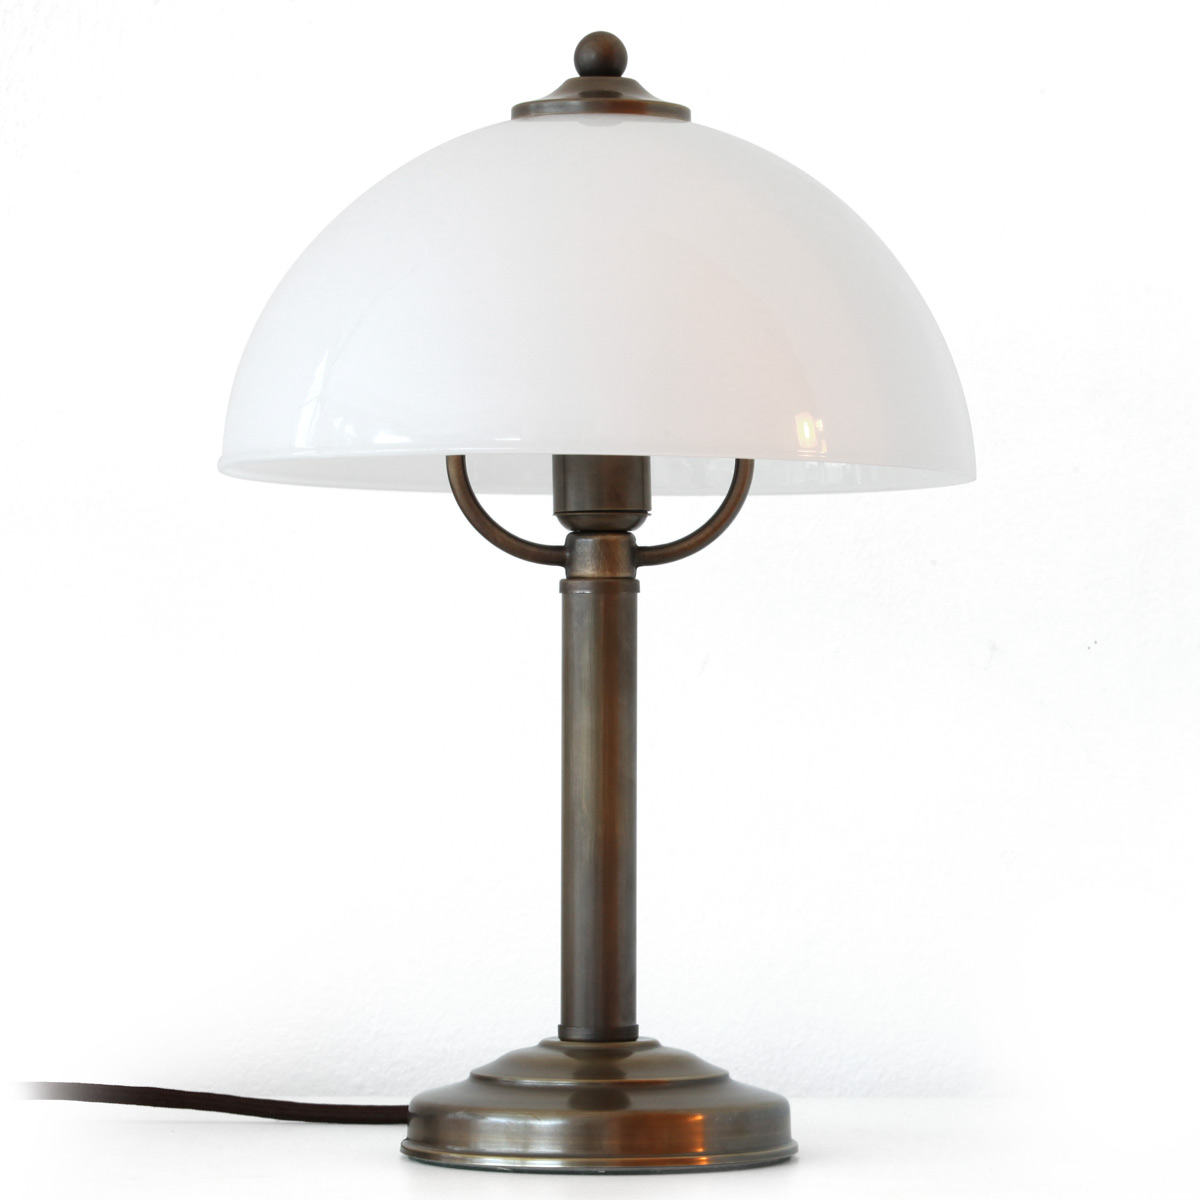 Small Classic Mushroom Table Lamp Made, Adesso 4050 15 Lexington Table Lamp